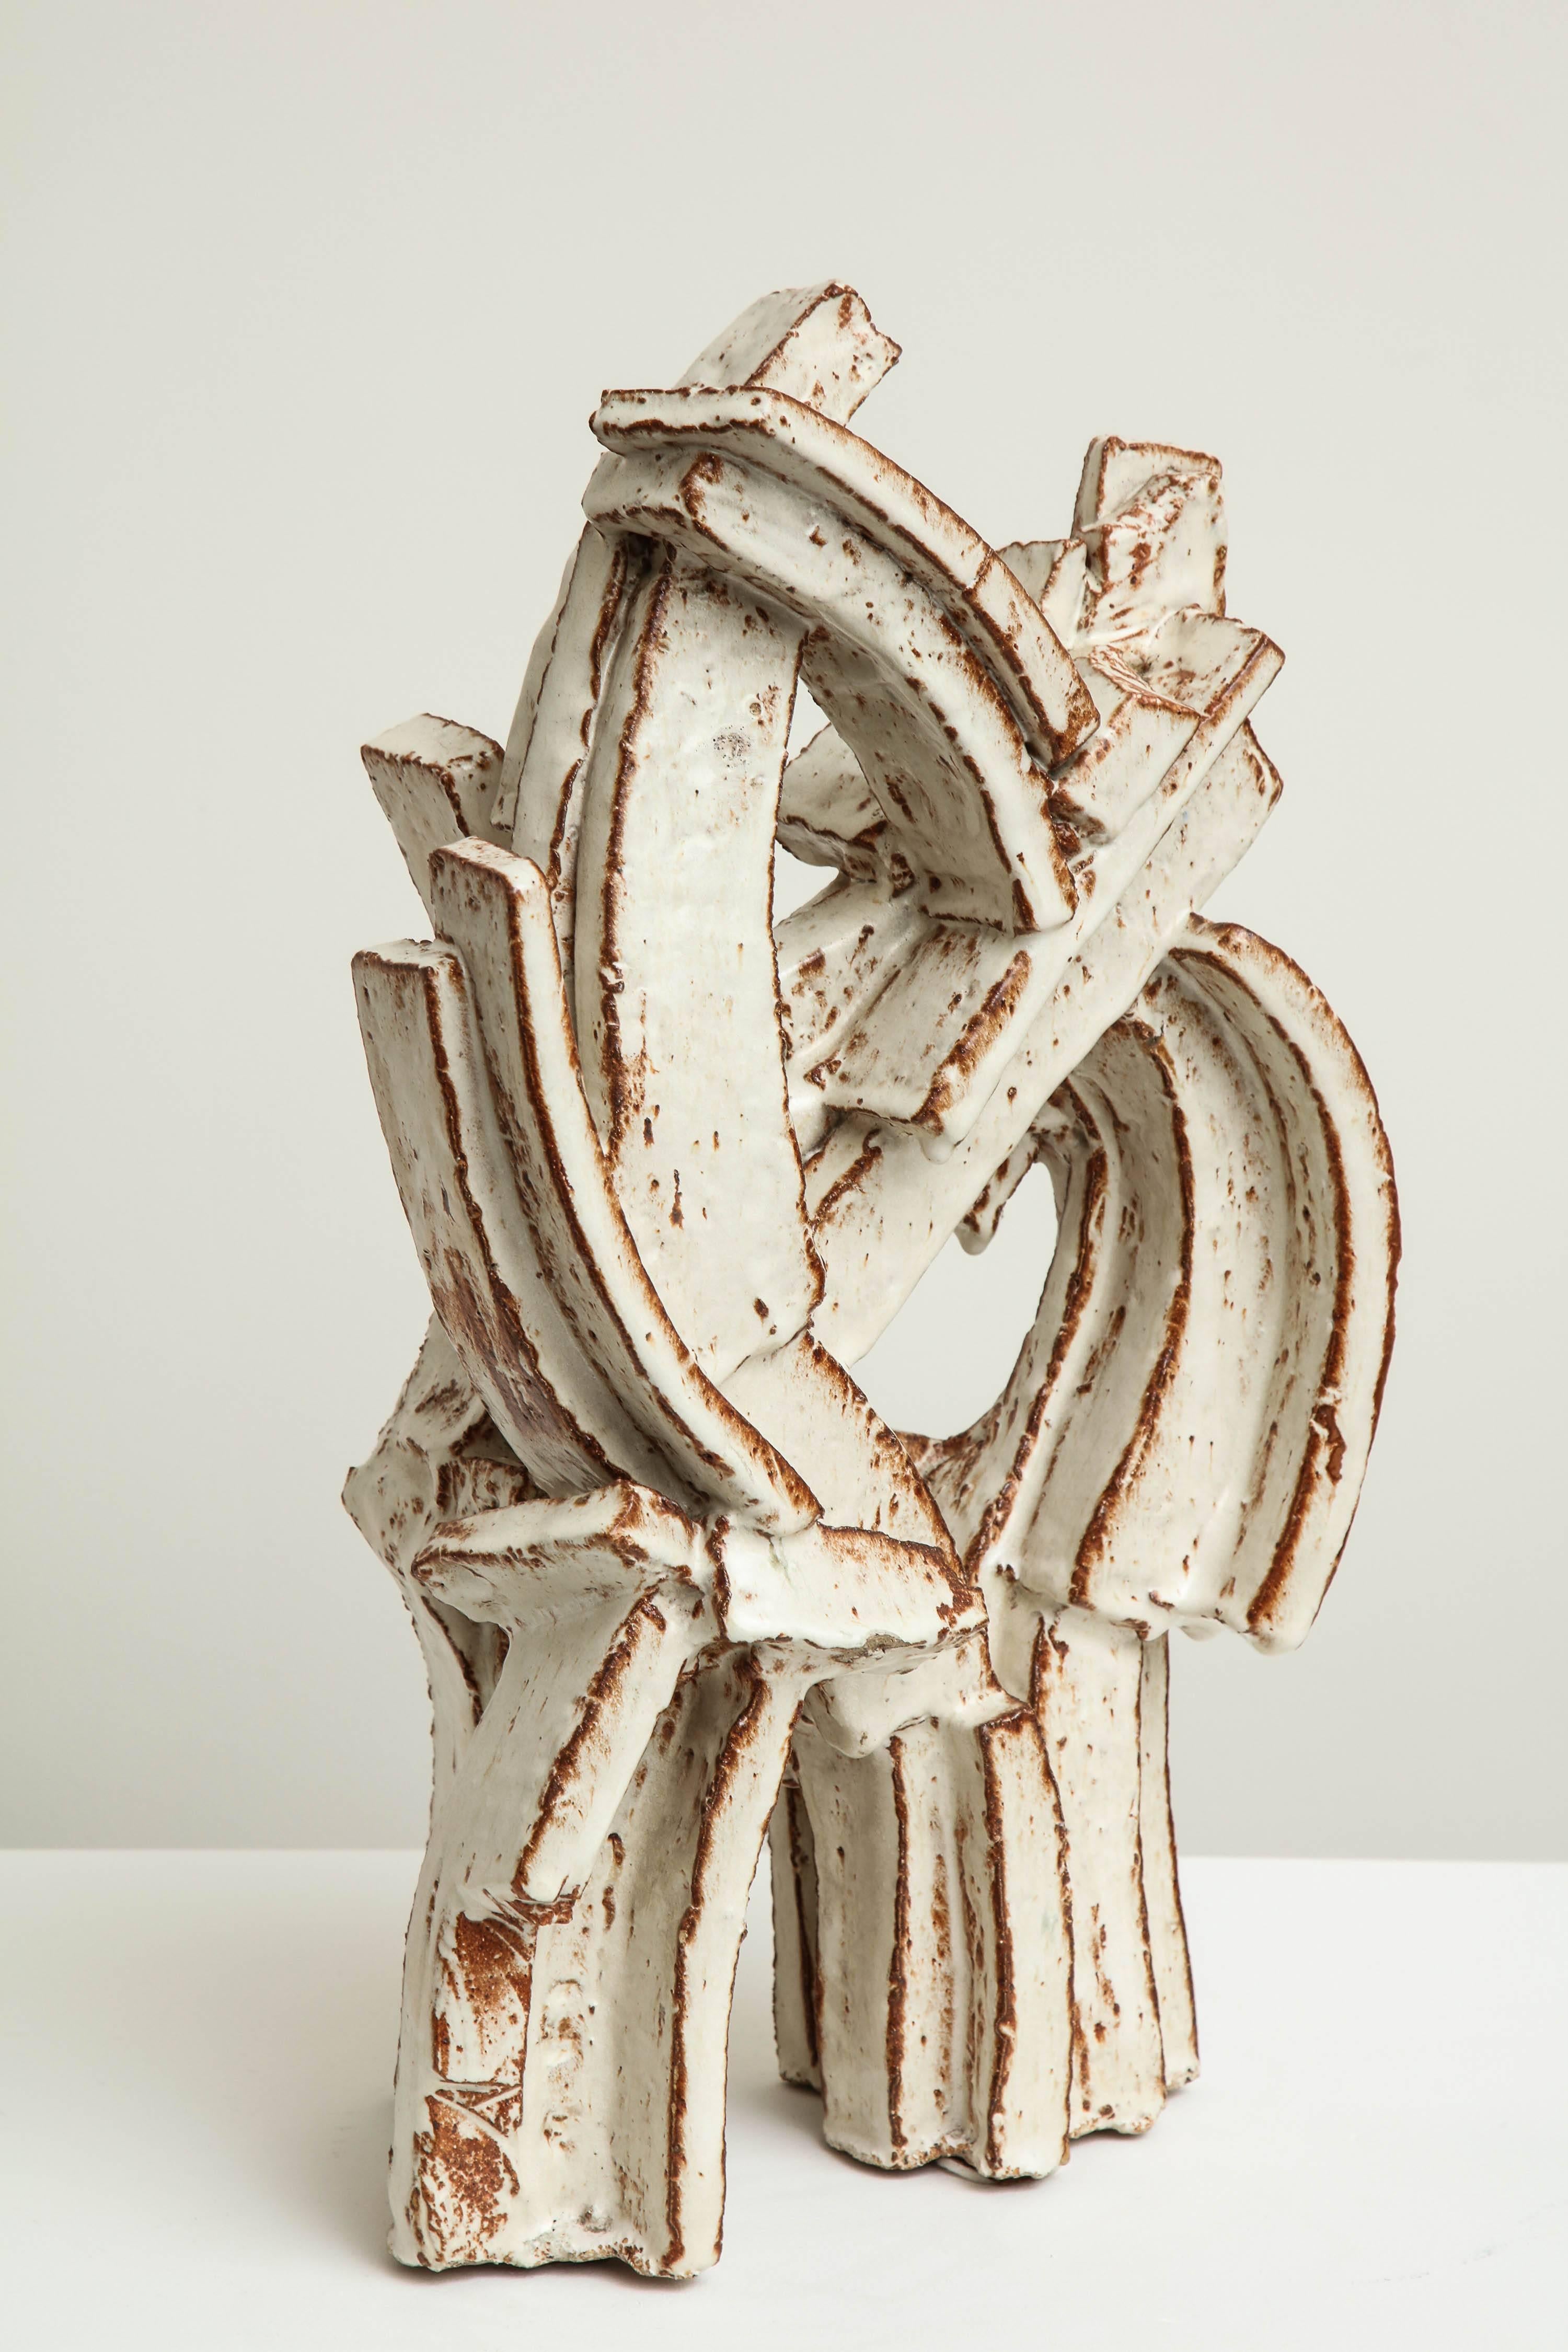 Wunderschöne Keramikskulptur von einer der bedeutendsten schwedischen Künstlerinnen des 20. Jahrhunderts, Hertha Hillfon.


Hertha Hillfon (Schwedin, 1921-2013)
Keramische Skulptur, um 1965
Steingut, weiße Glasur
Maße: 23